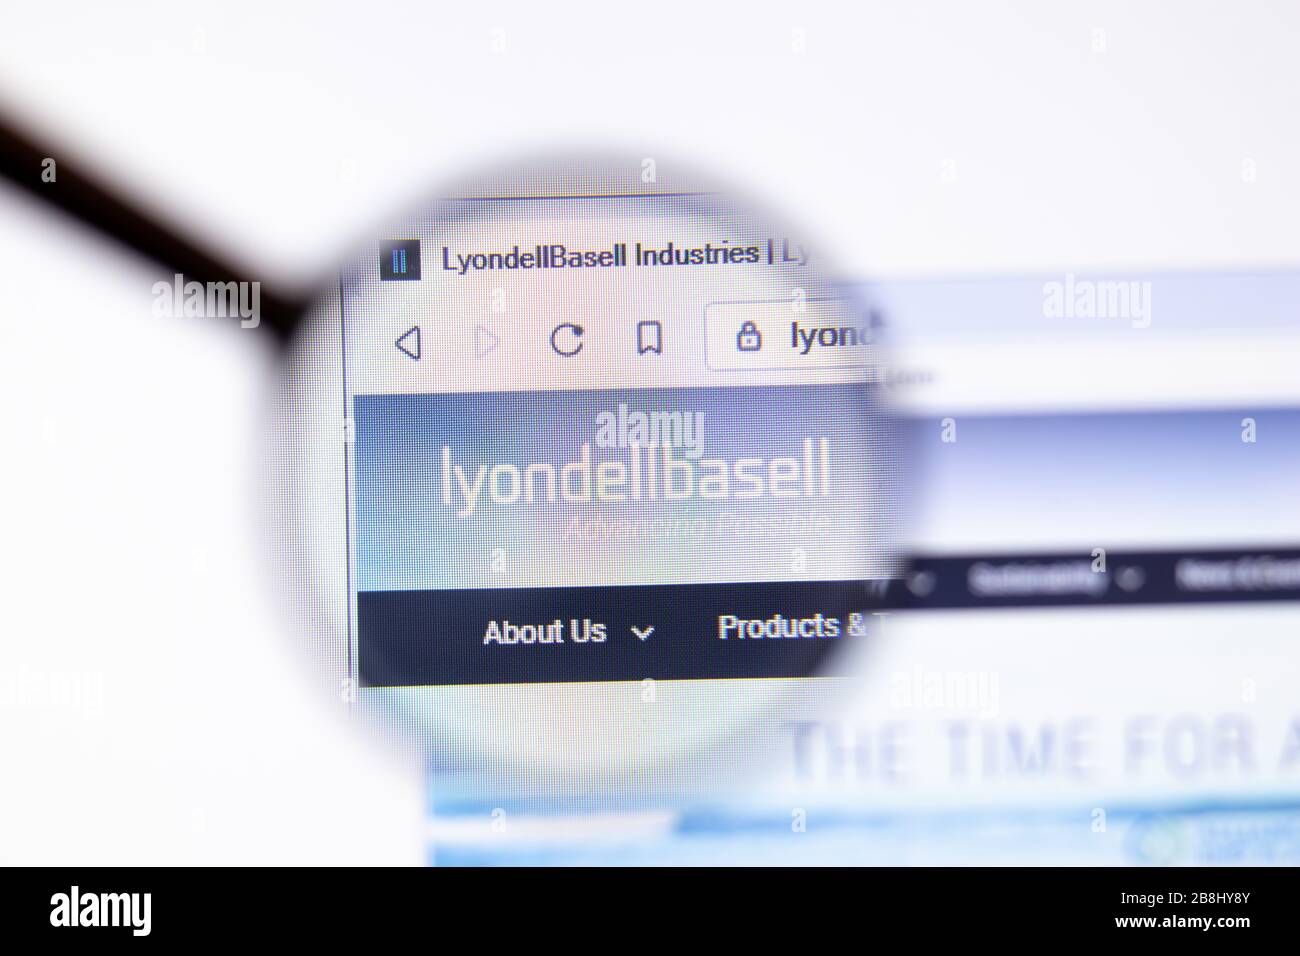 Los Angeles, Kalifornien, USA - 20. März 2020: Firmenlogo von LyondellBasell Industries auf der Webseite Close-up on Screen, Illustrative Editorial Stockfoto